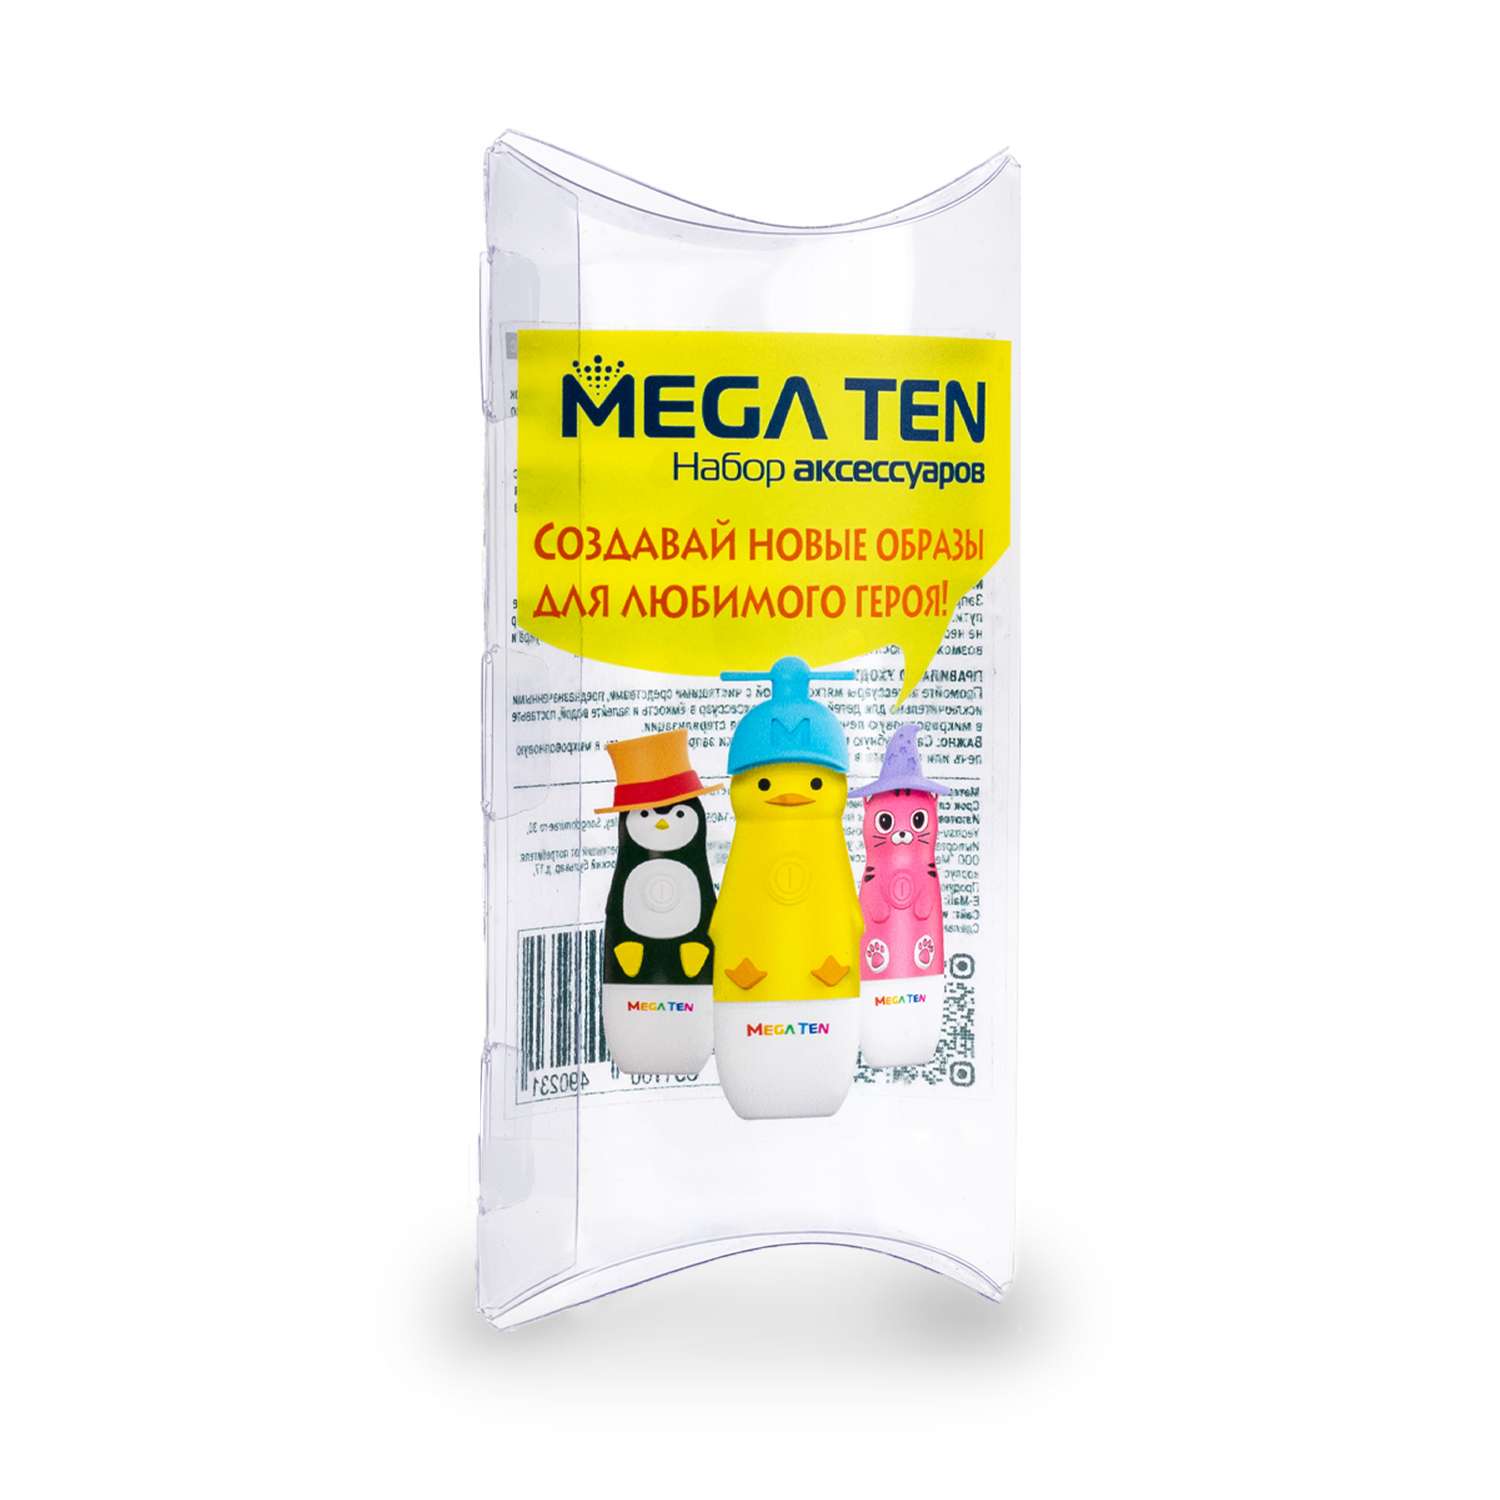 Аксессуары для зубной щётки Mega Ten kids sonic набор шапочек 123-MKS1 для MEGA TEN kids sonic - фото 1